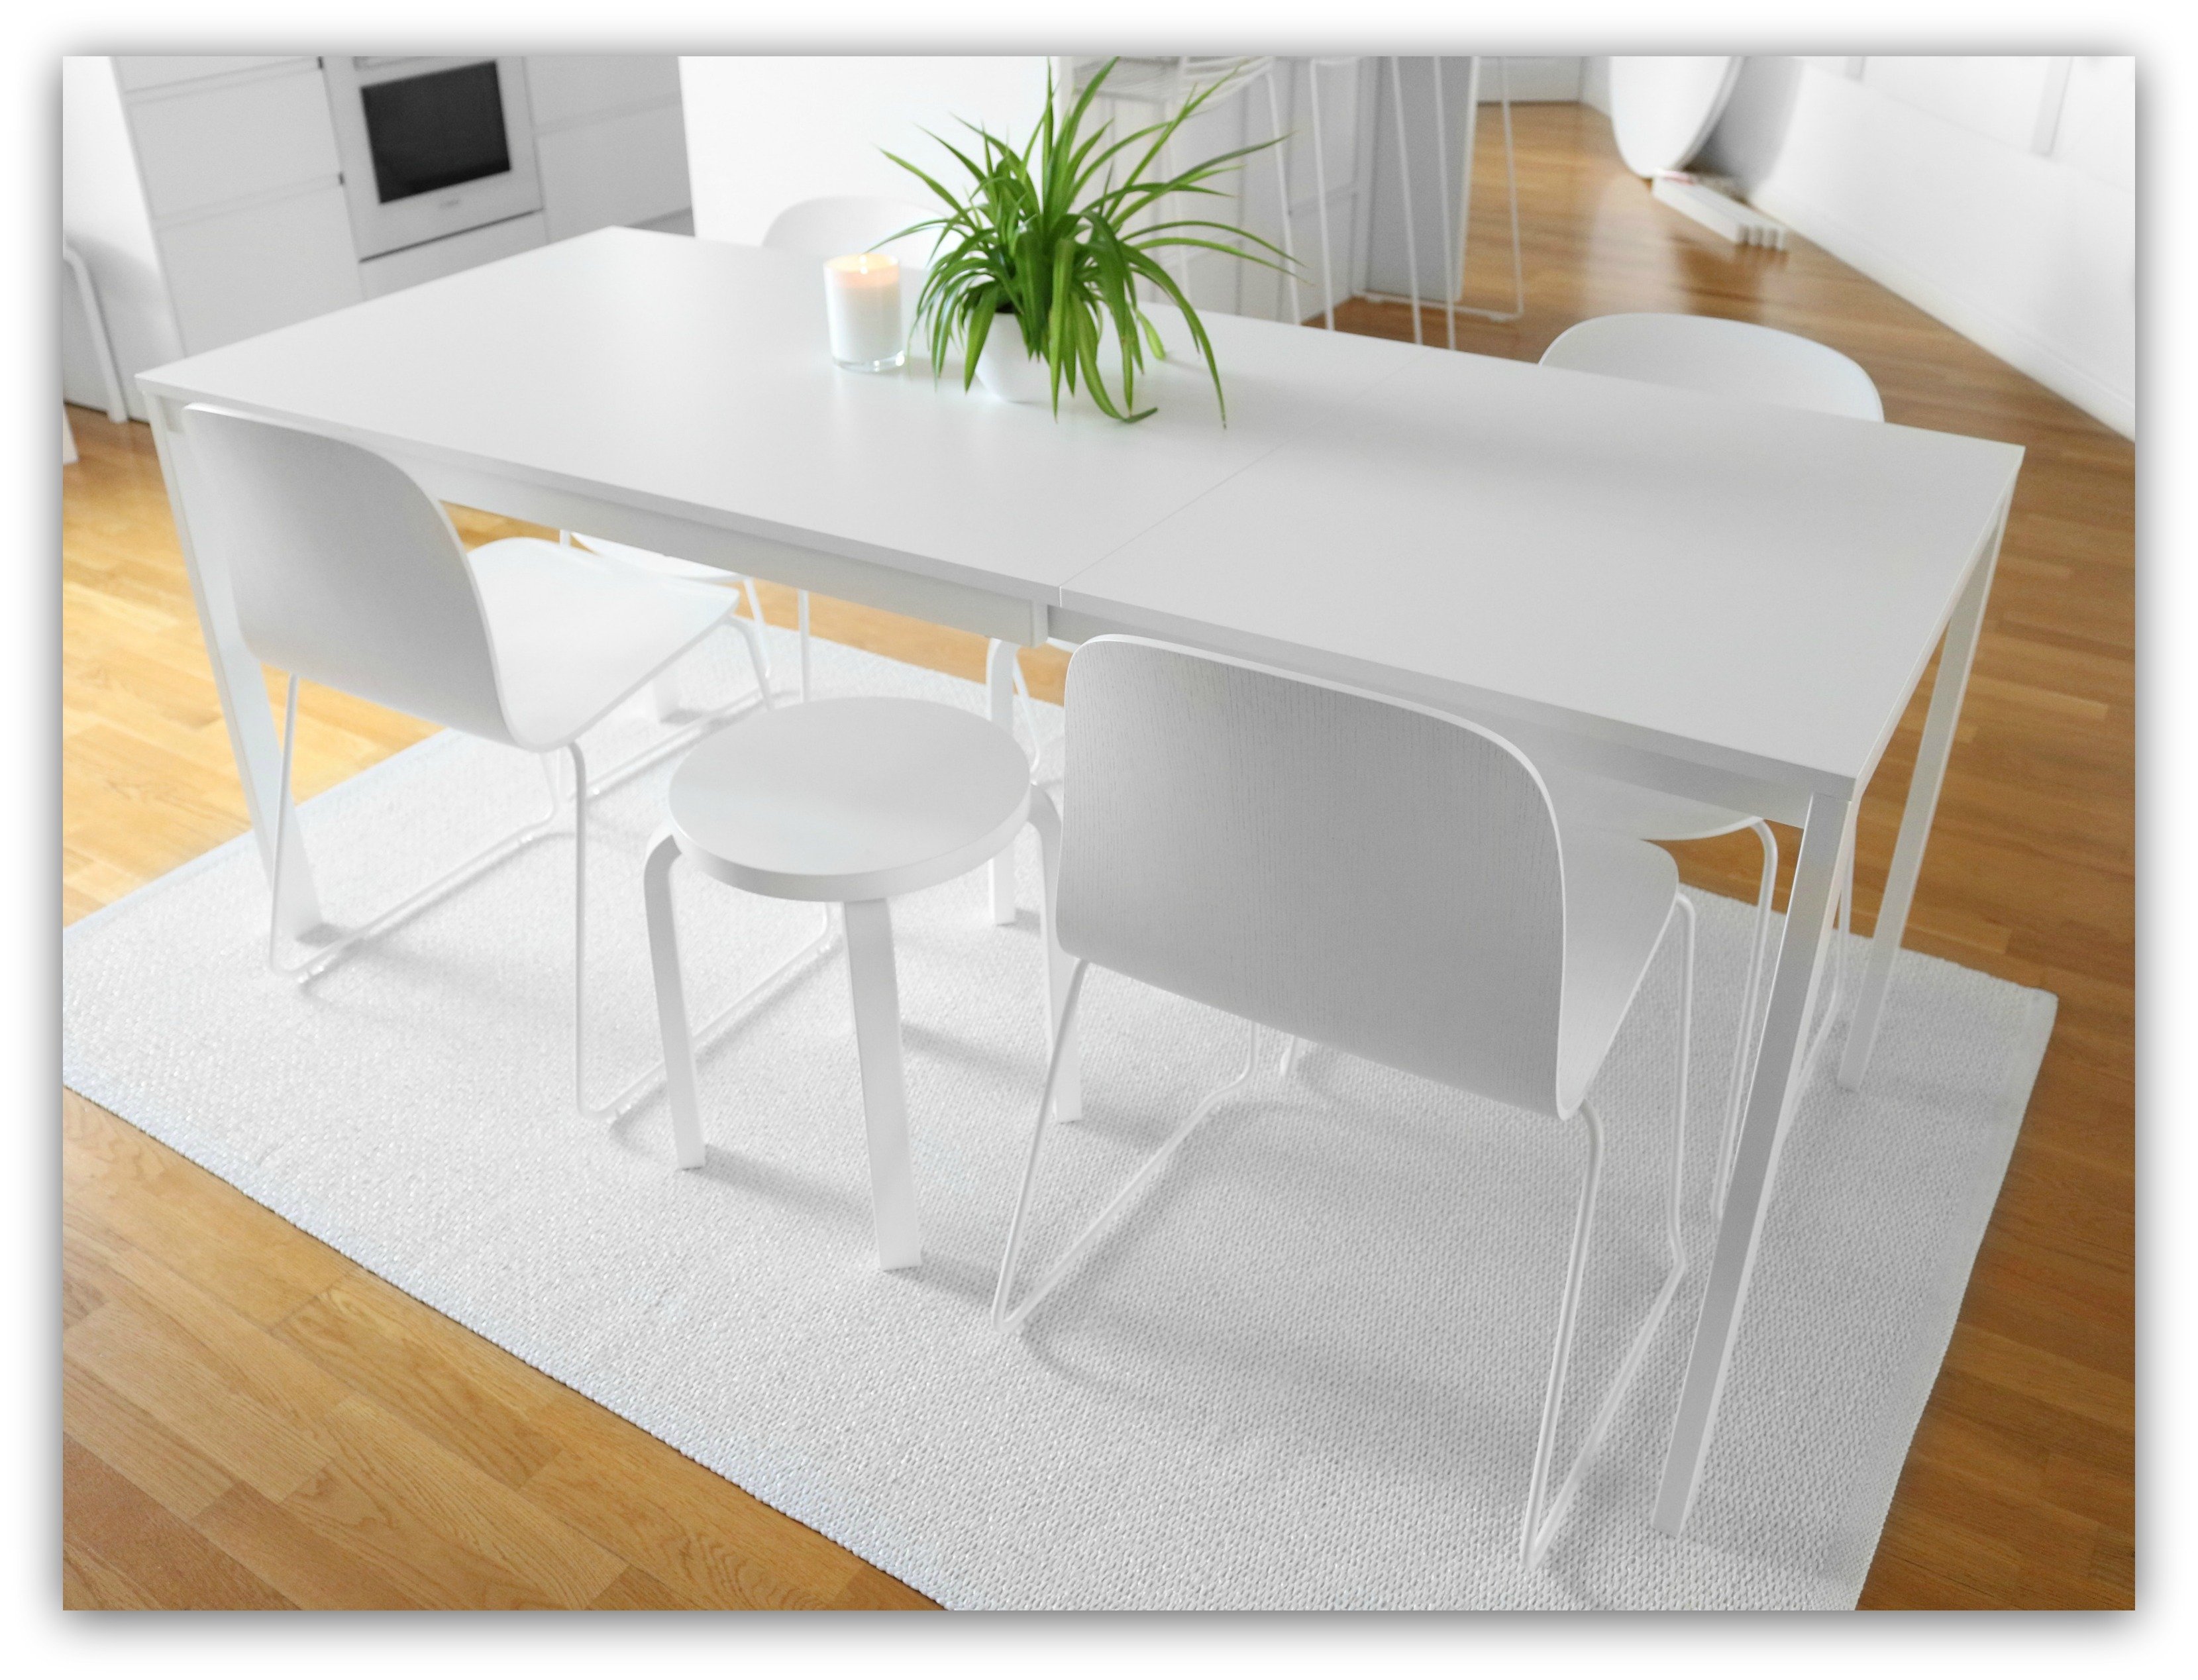 Икеа стол кухонный белый. VANGSTA ВАНГСТА раздвижной стол, белый80/120x70 см. VANGSTA ВАНГСТА стол икеа. Стол кухонный икеа ВАНГСТА. Стол ВАНГСТА икеа белый.